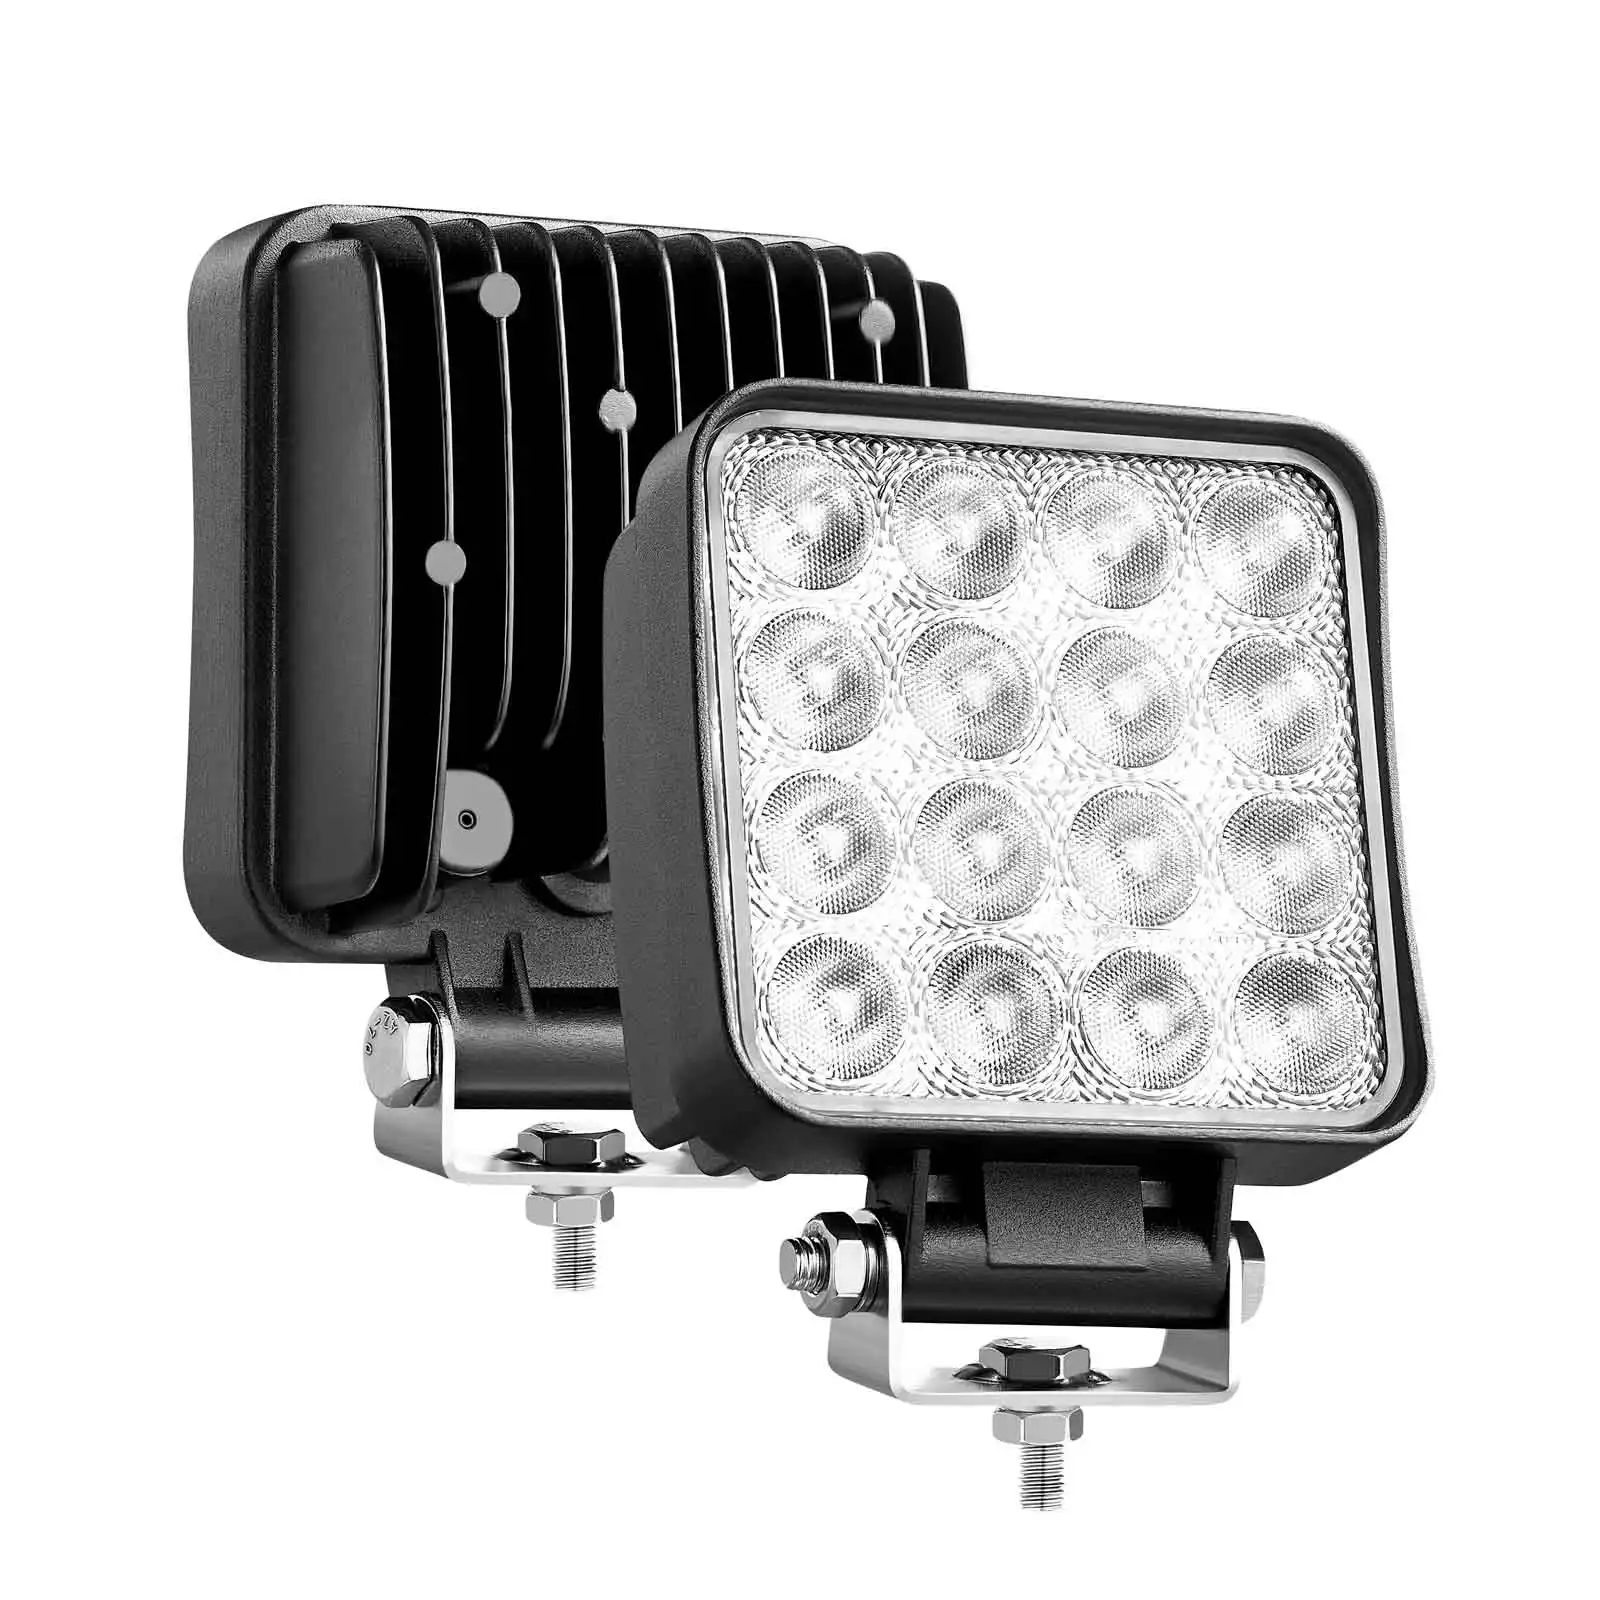 E-mark approvato 12V 24 Volt 48w Best Offroad LED Work Light Square con sfiato per trattore auto fuoristrada luce di lavoro per camion